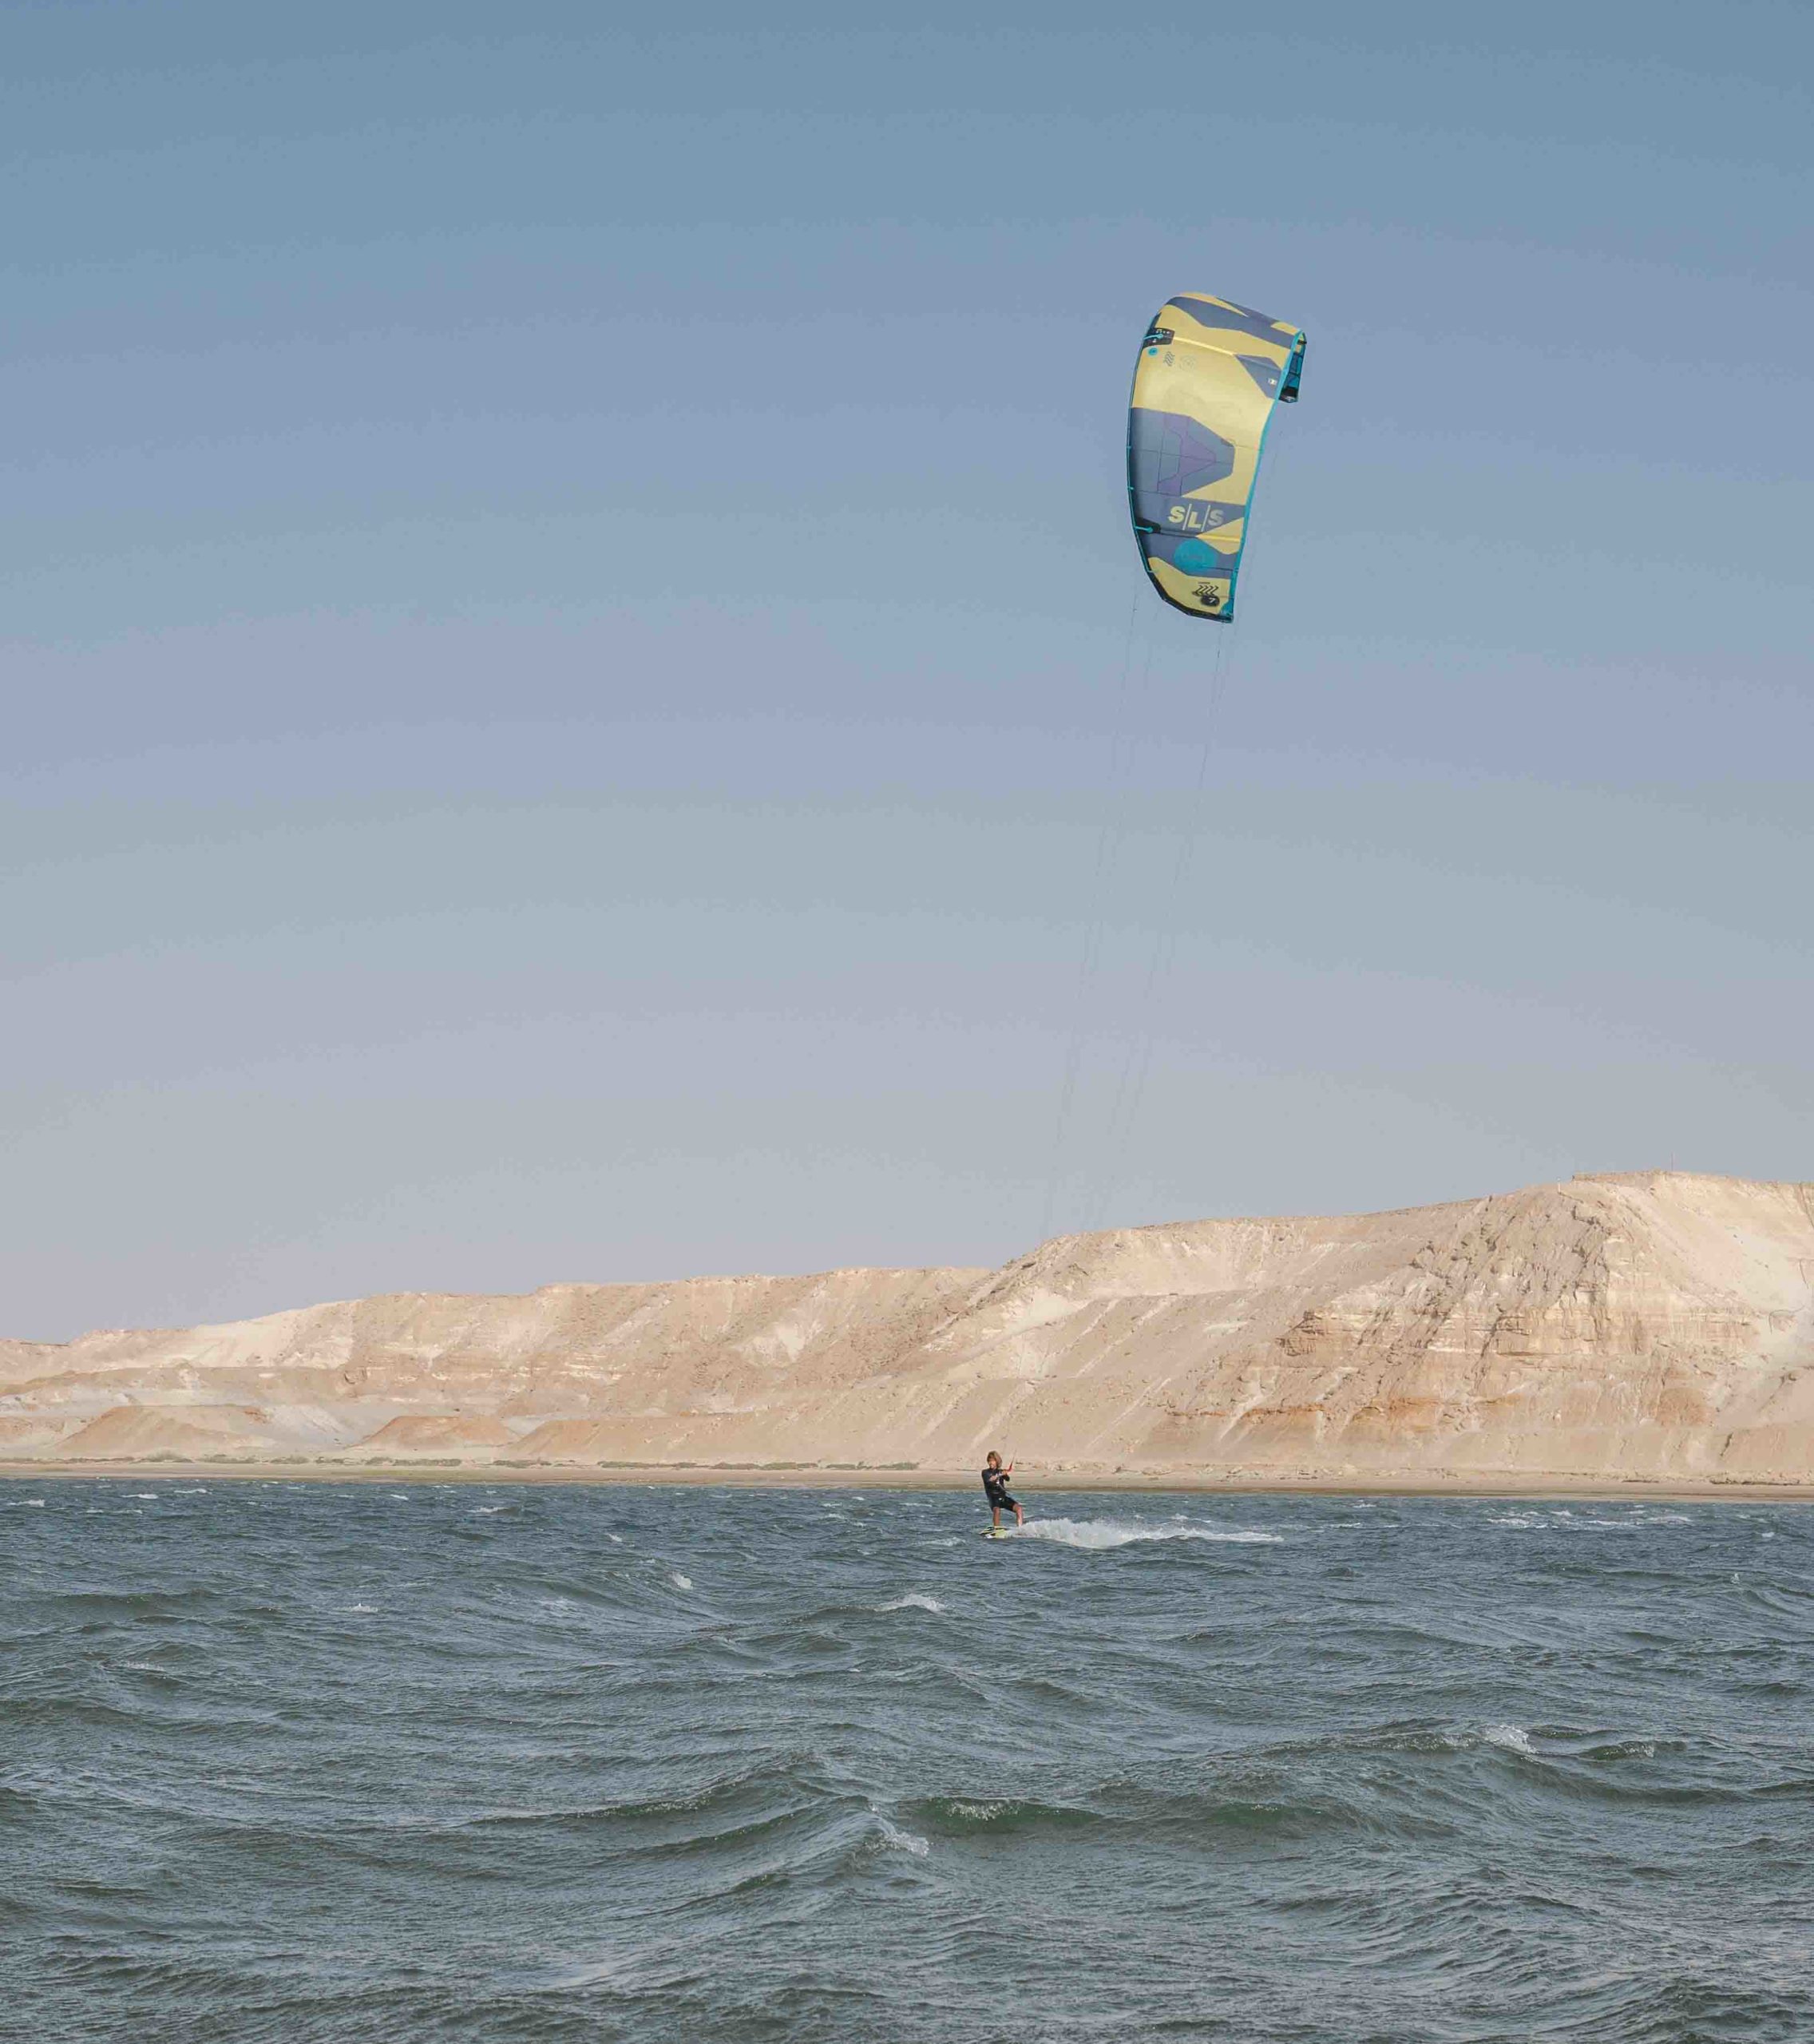 kitesurf in the water of dakhla white dune